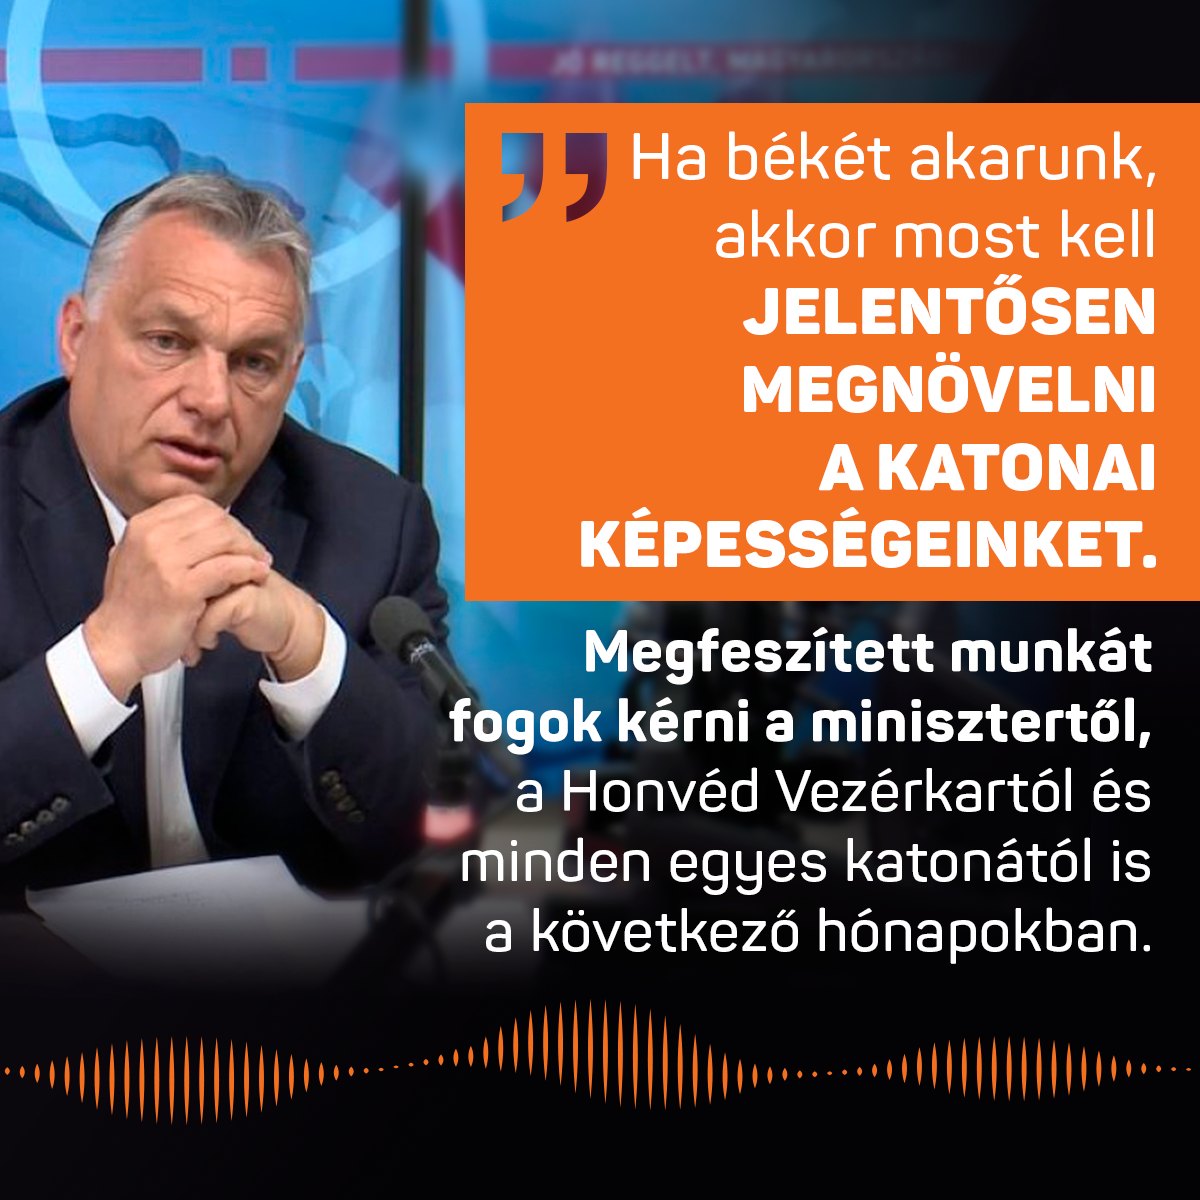 Ha békét akarunk, akkor most kell jelentősen megnövelni a katonai képességeinket. Megfeszített munkát fogok kérni a minisztertől, a Honvéd Vezérkartól és minden egyes katonától is a következő hónapokban – mondta Orbán Viktor a Kossuth Rádióban.